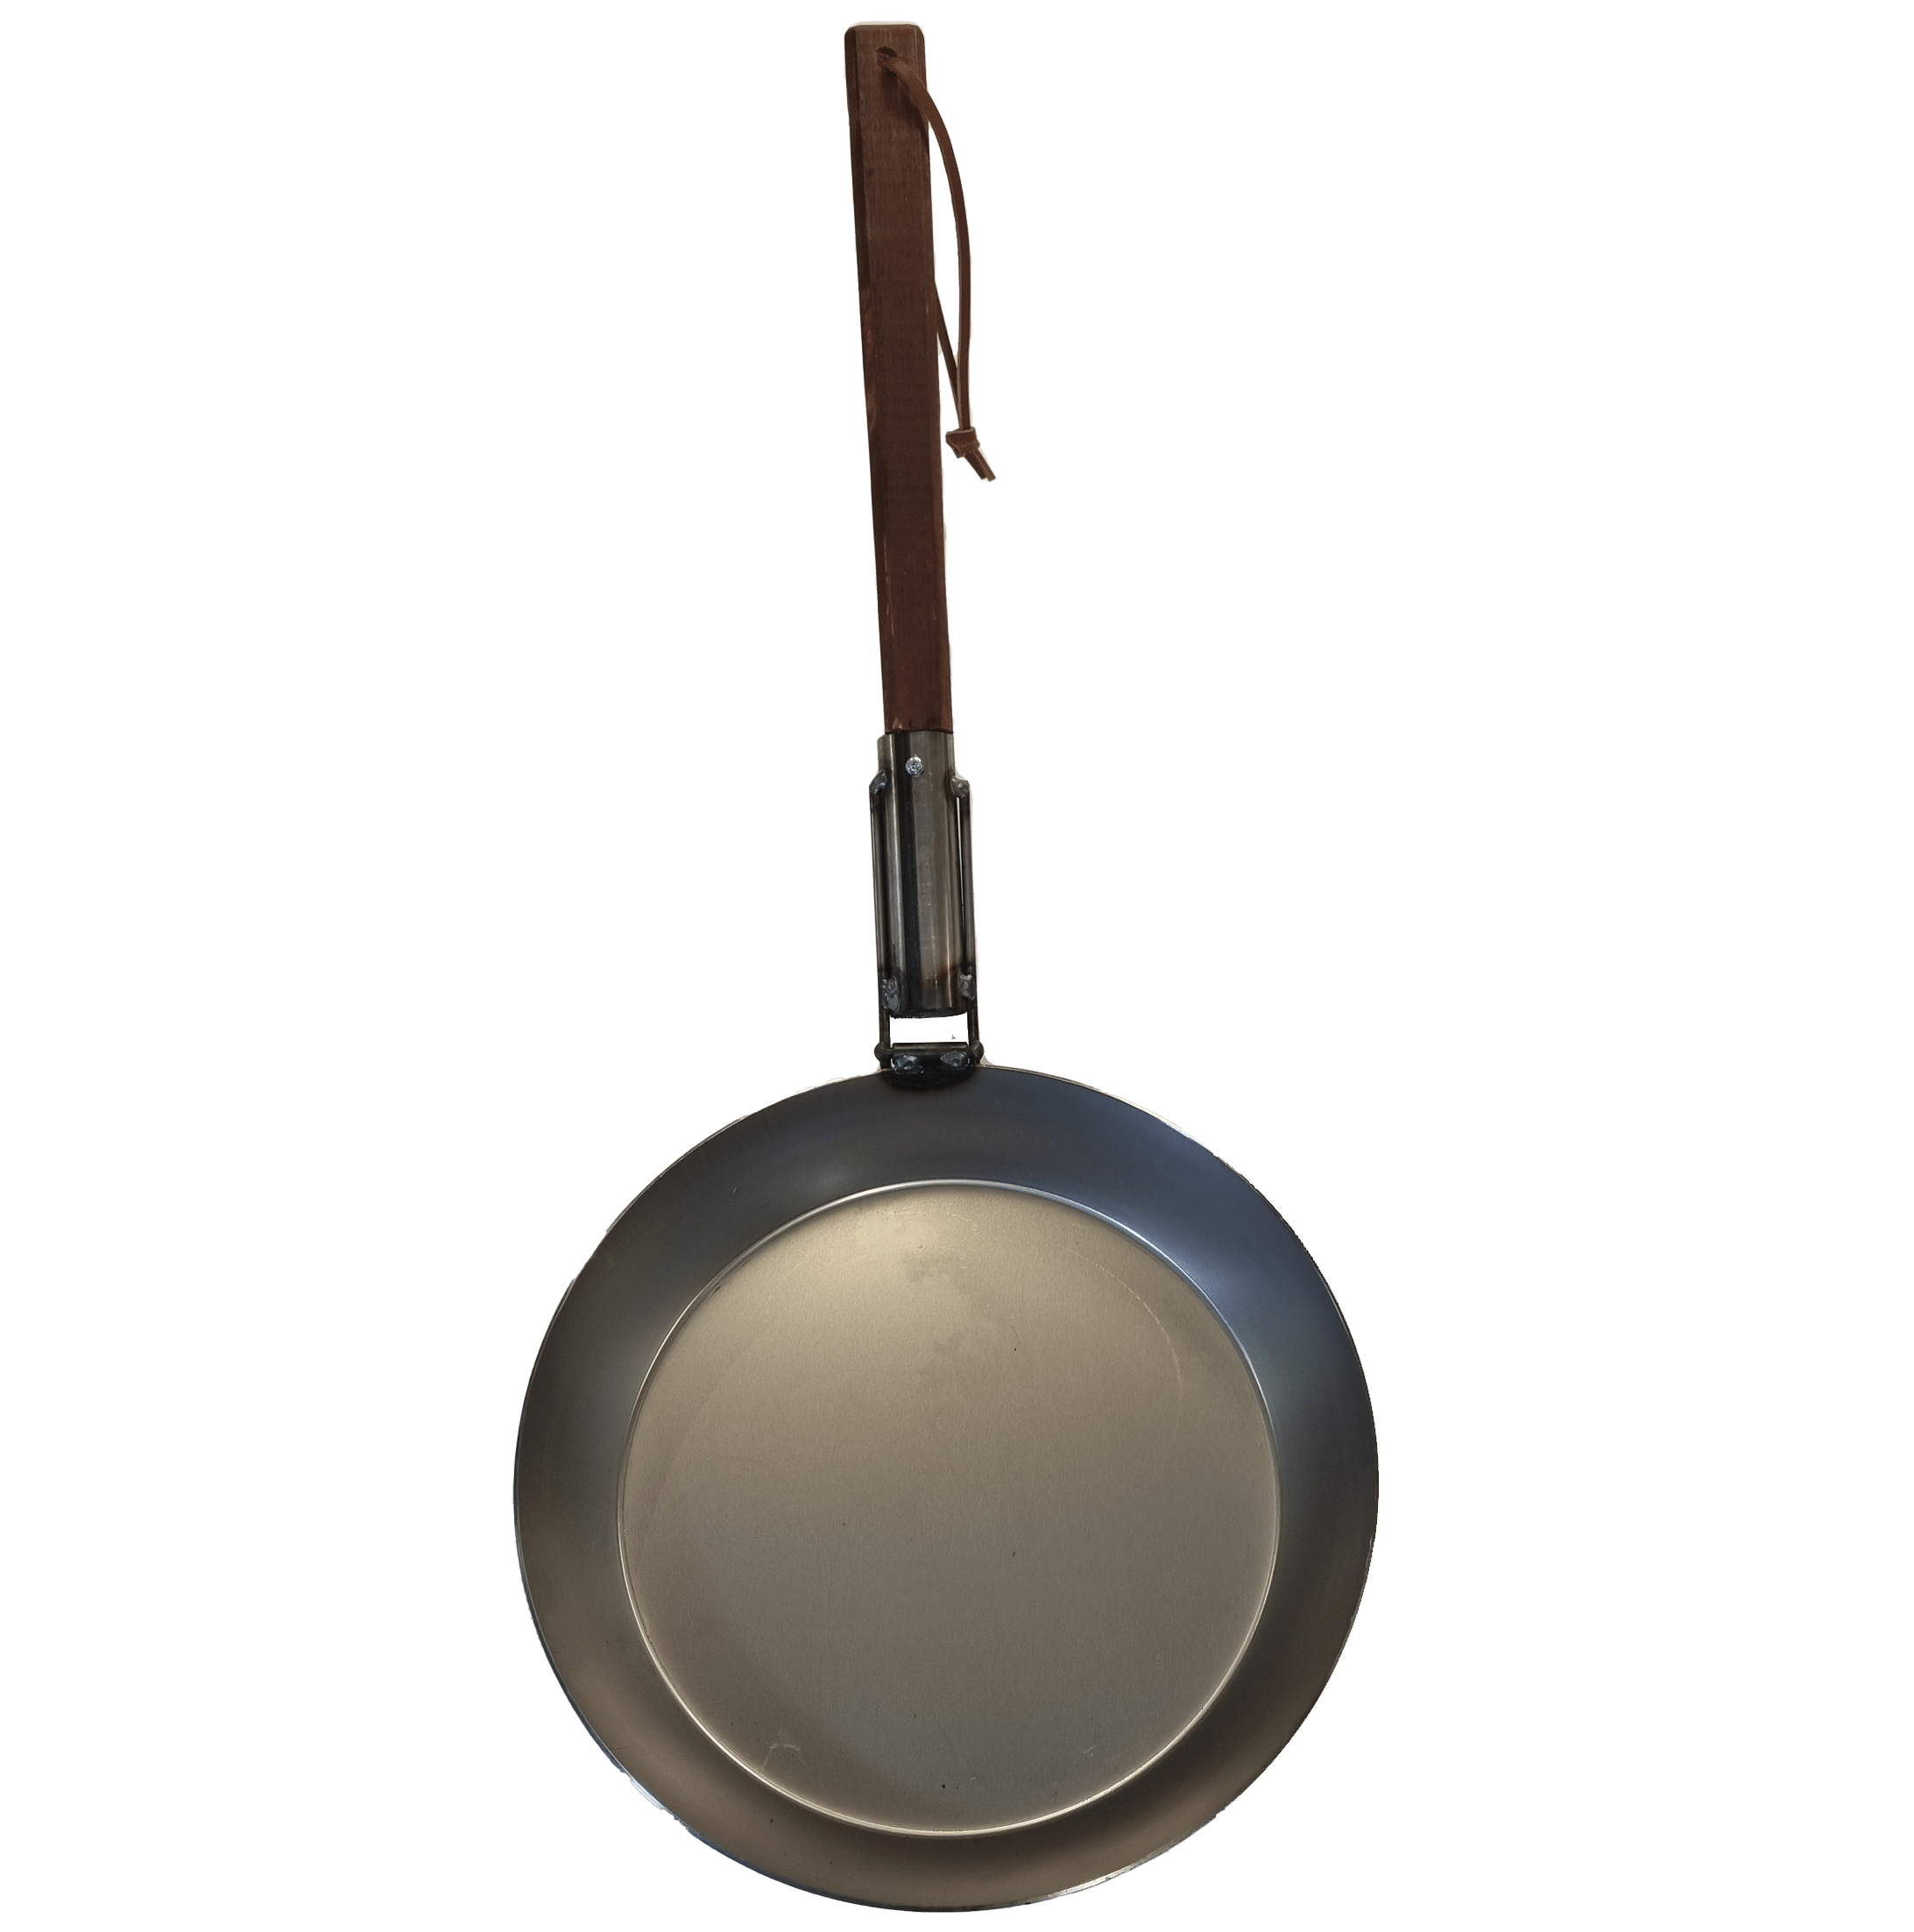 Vildmarks iron pan - Outdoor pan with folding handle / DIY handle